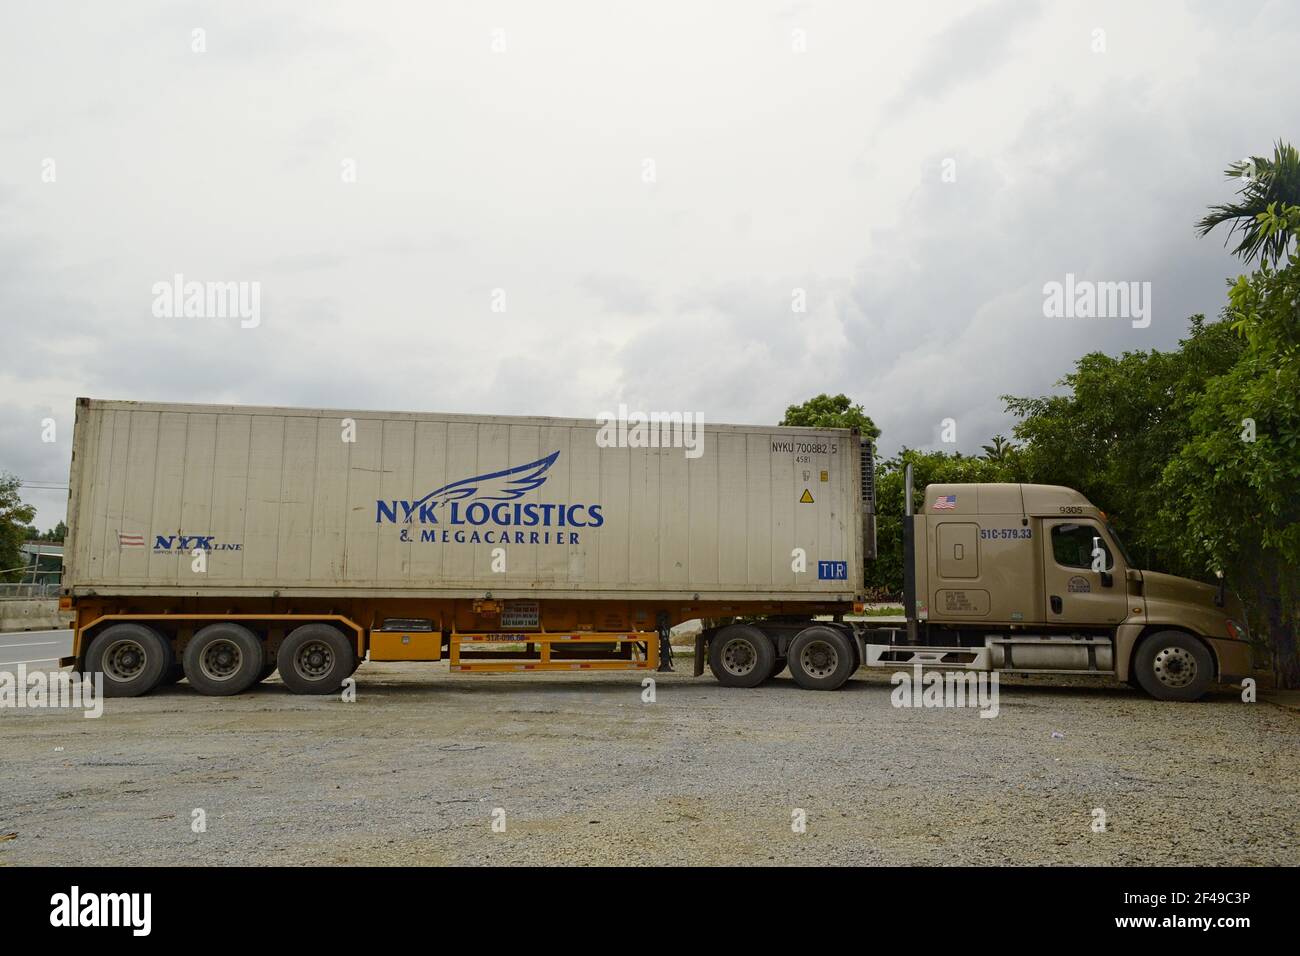 Vinh, Vietnam - septembre 2015 : un camion de transport lourd reste sur un parking près de l'autoroute. Vue latérale d'un véhicule terrestre long avec chargement Banque D'Images